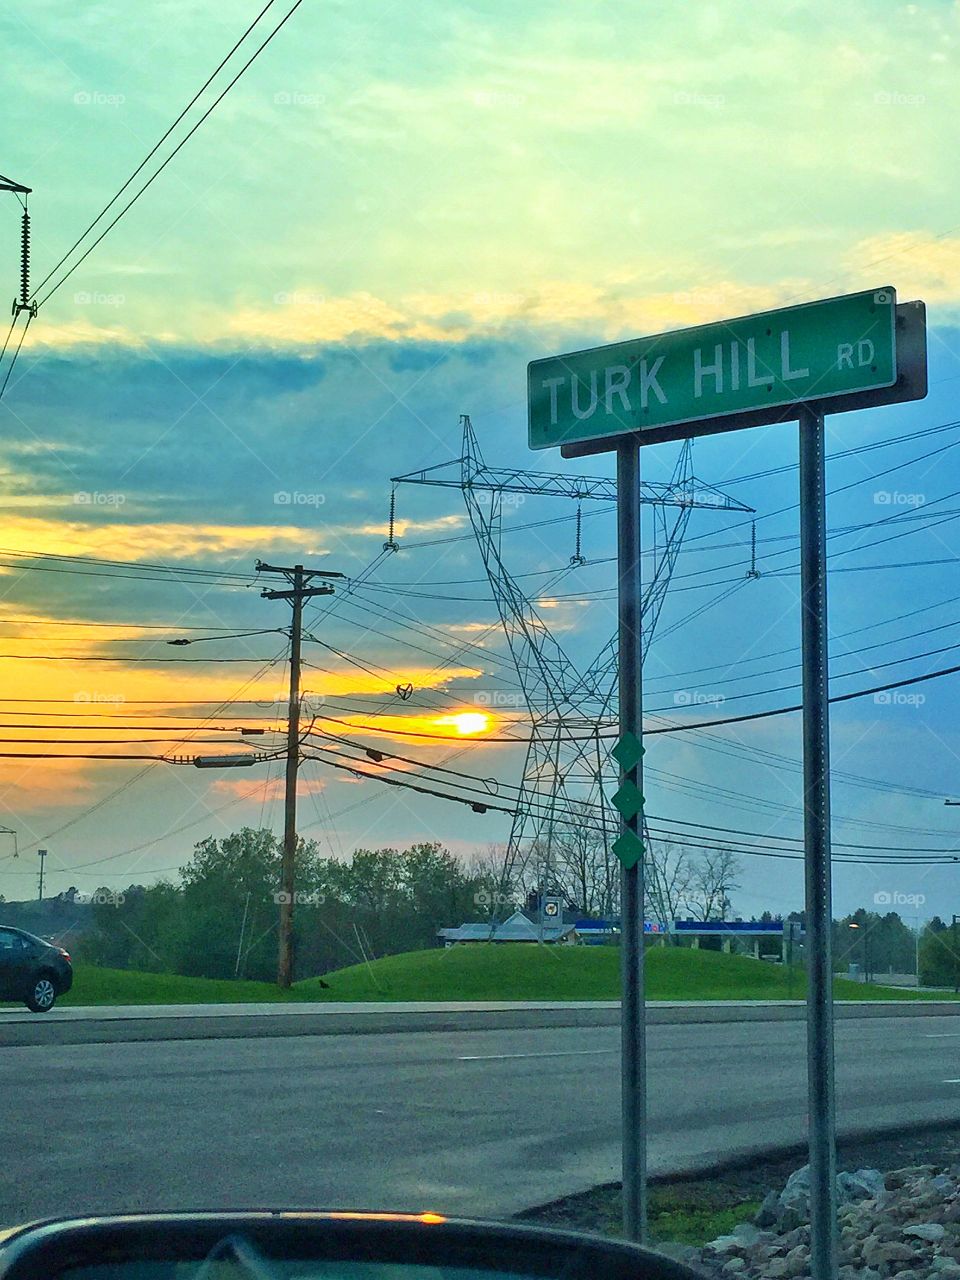 Turk Hill